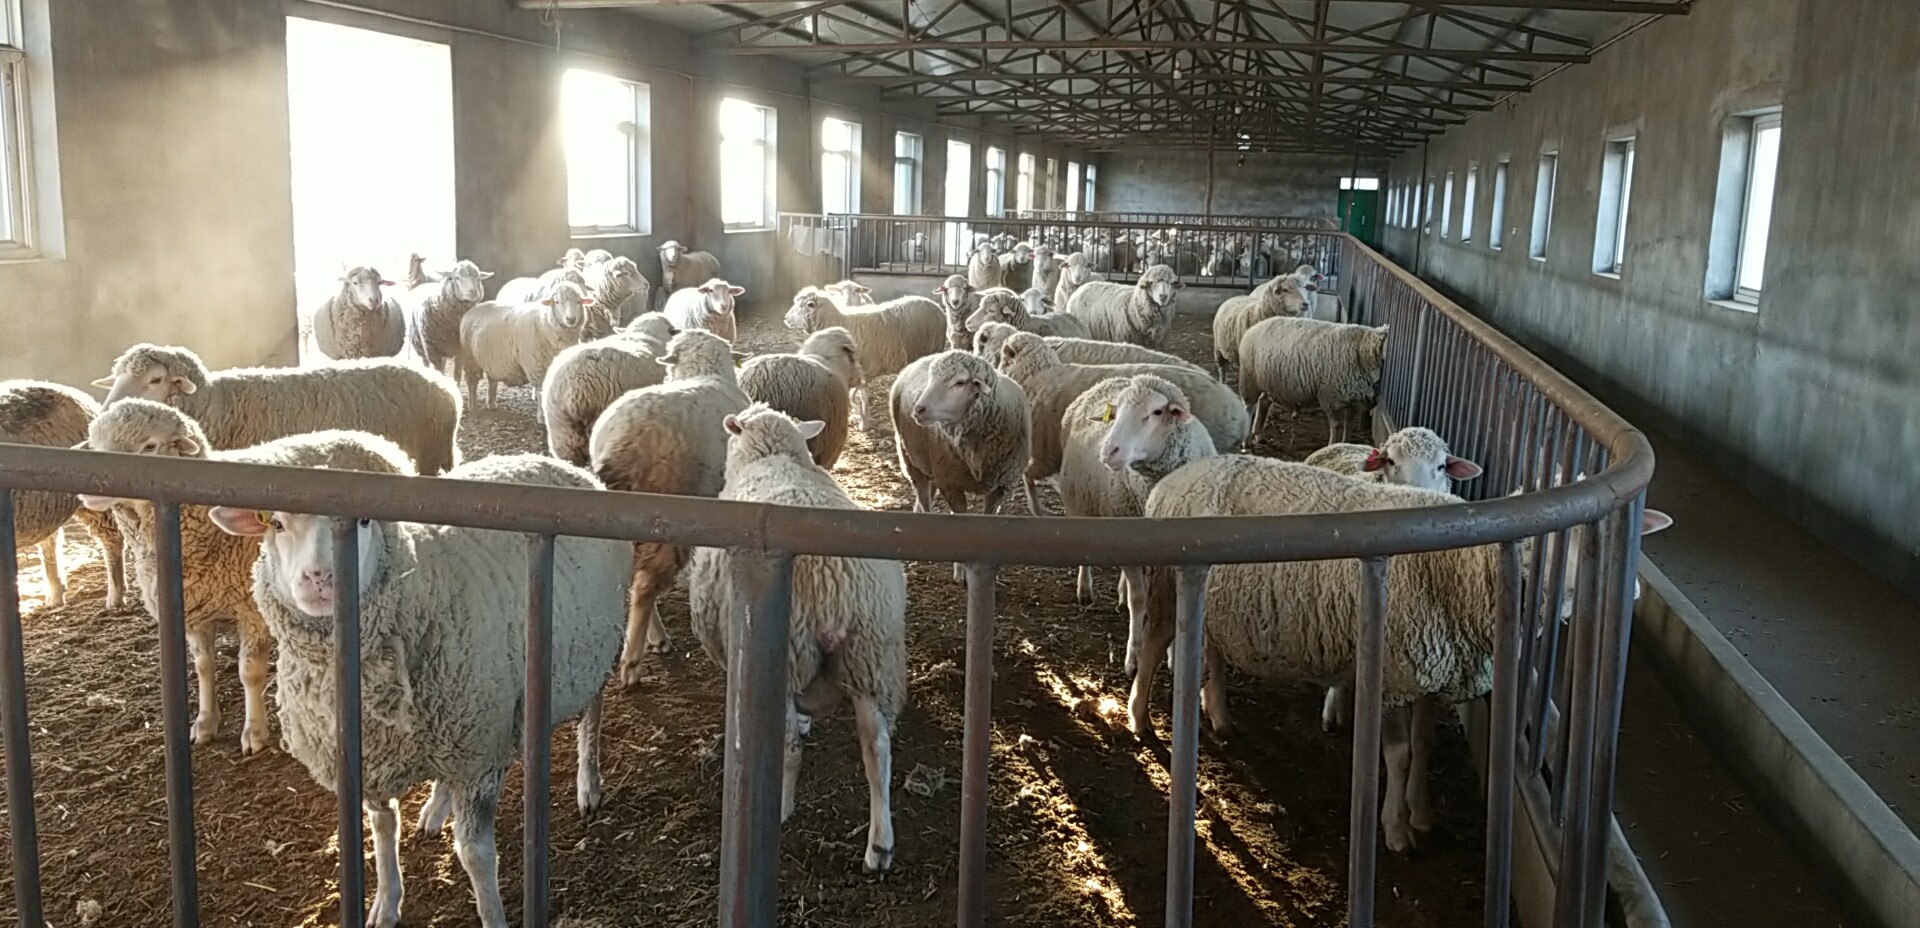 遼寧省農業科學院肉羊改良繁育中心--羊